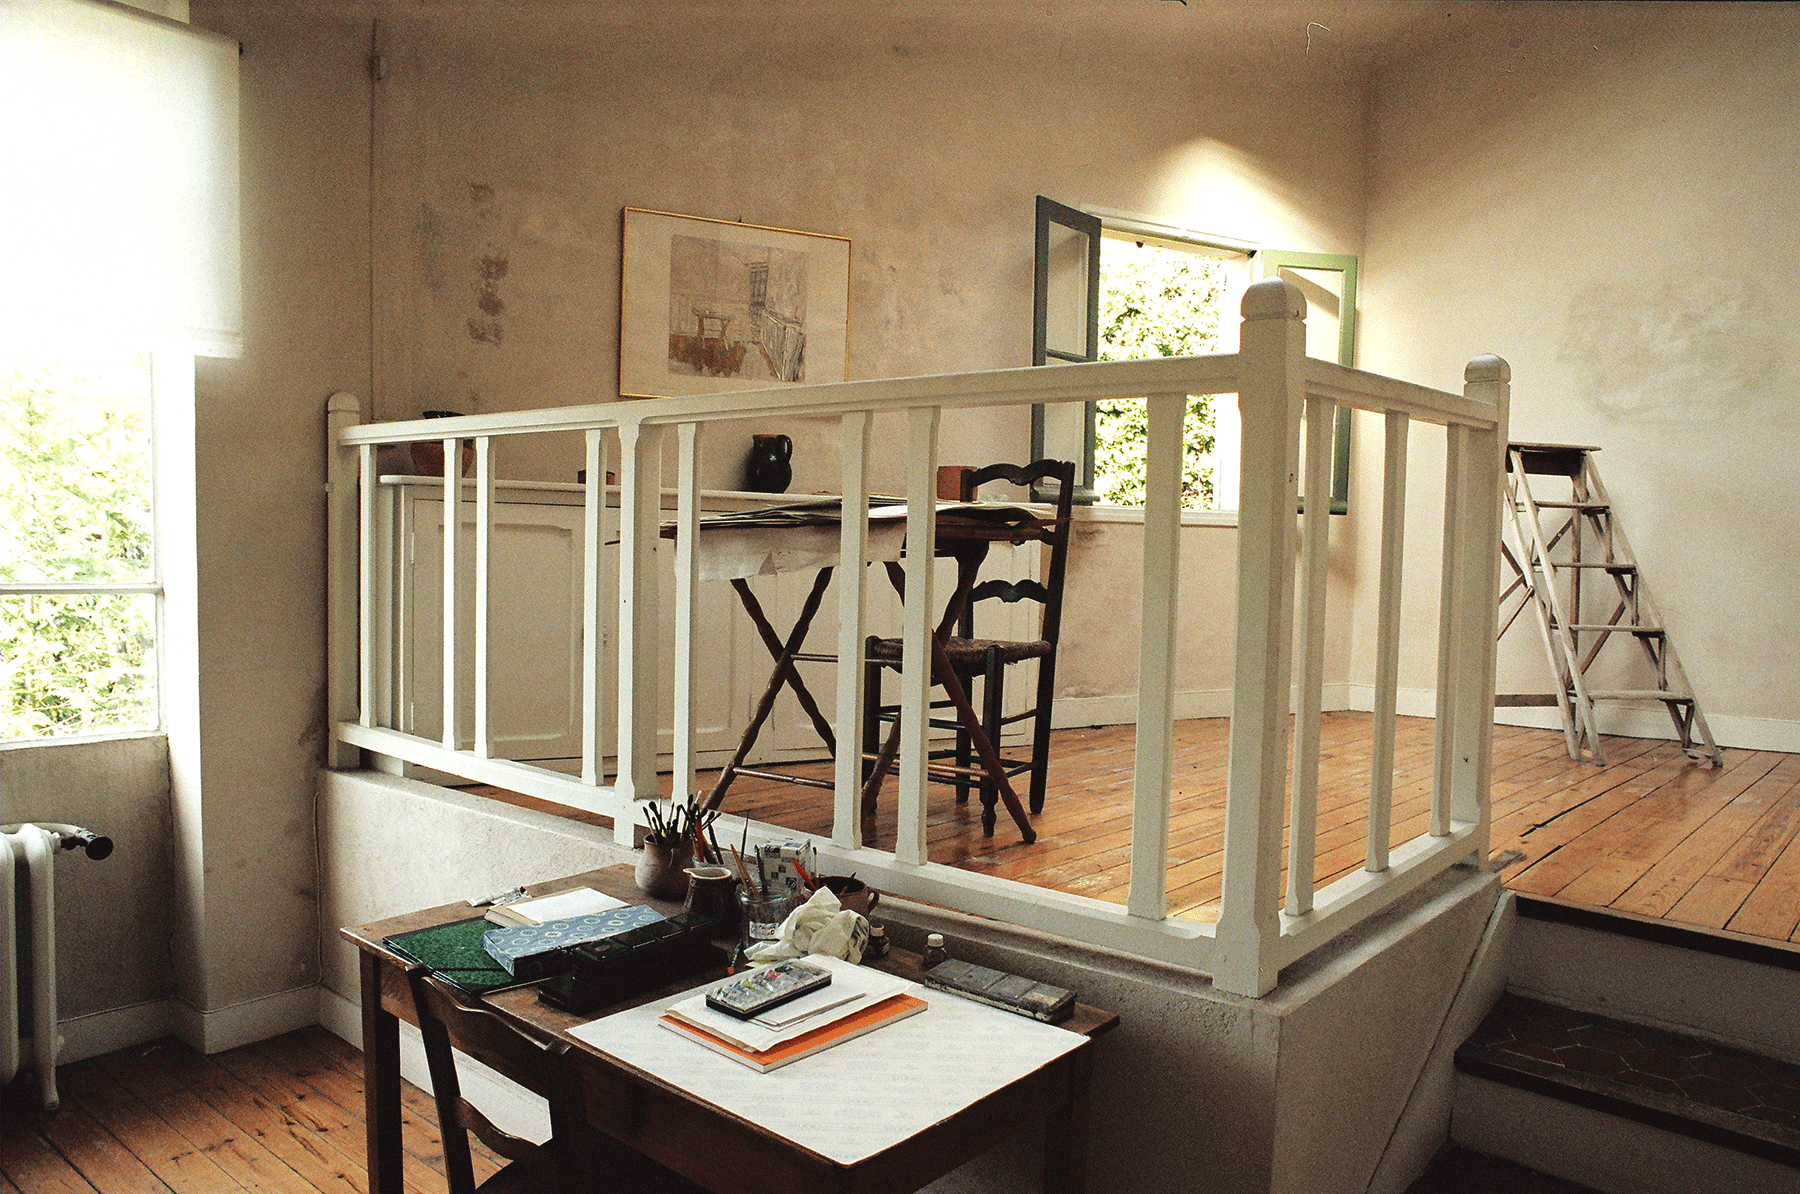 Le Bosquet, la maison-atelier de Pierre Bonnard